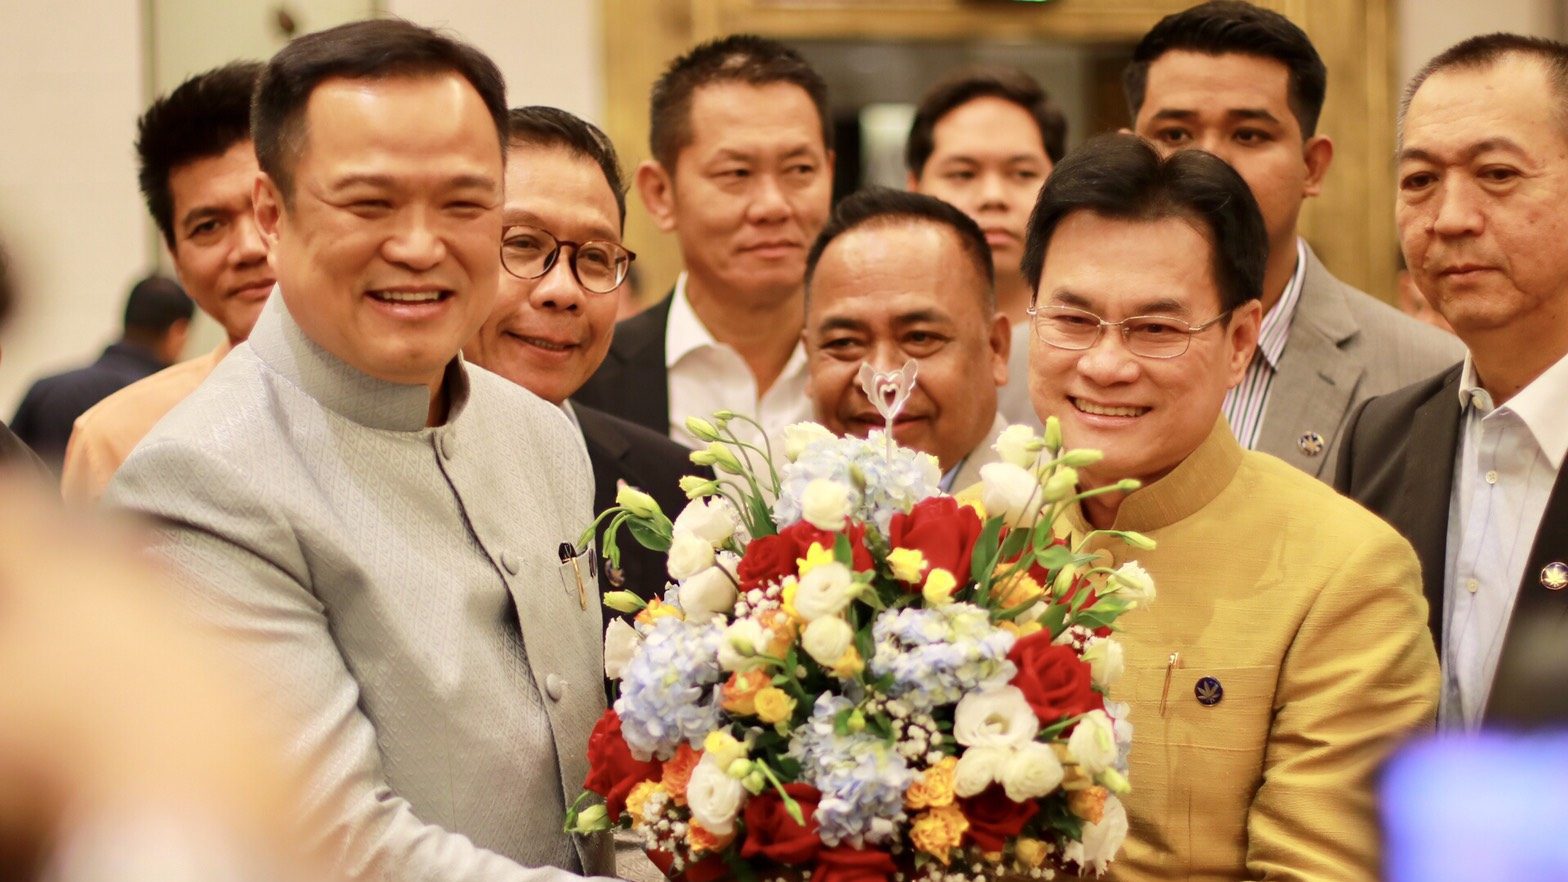 ประชาธิปัตย์-ภูมิใจไทย  พบปะเพื่อระดมพลังช่วยภัยน้ำท่วม